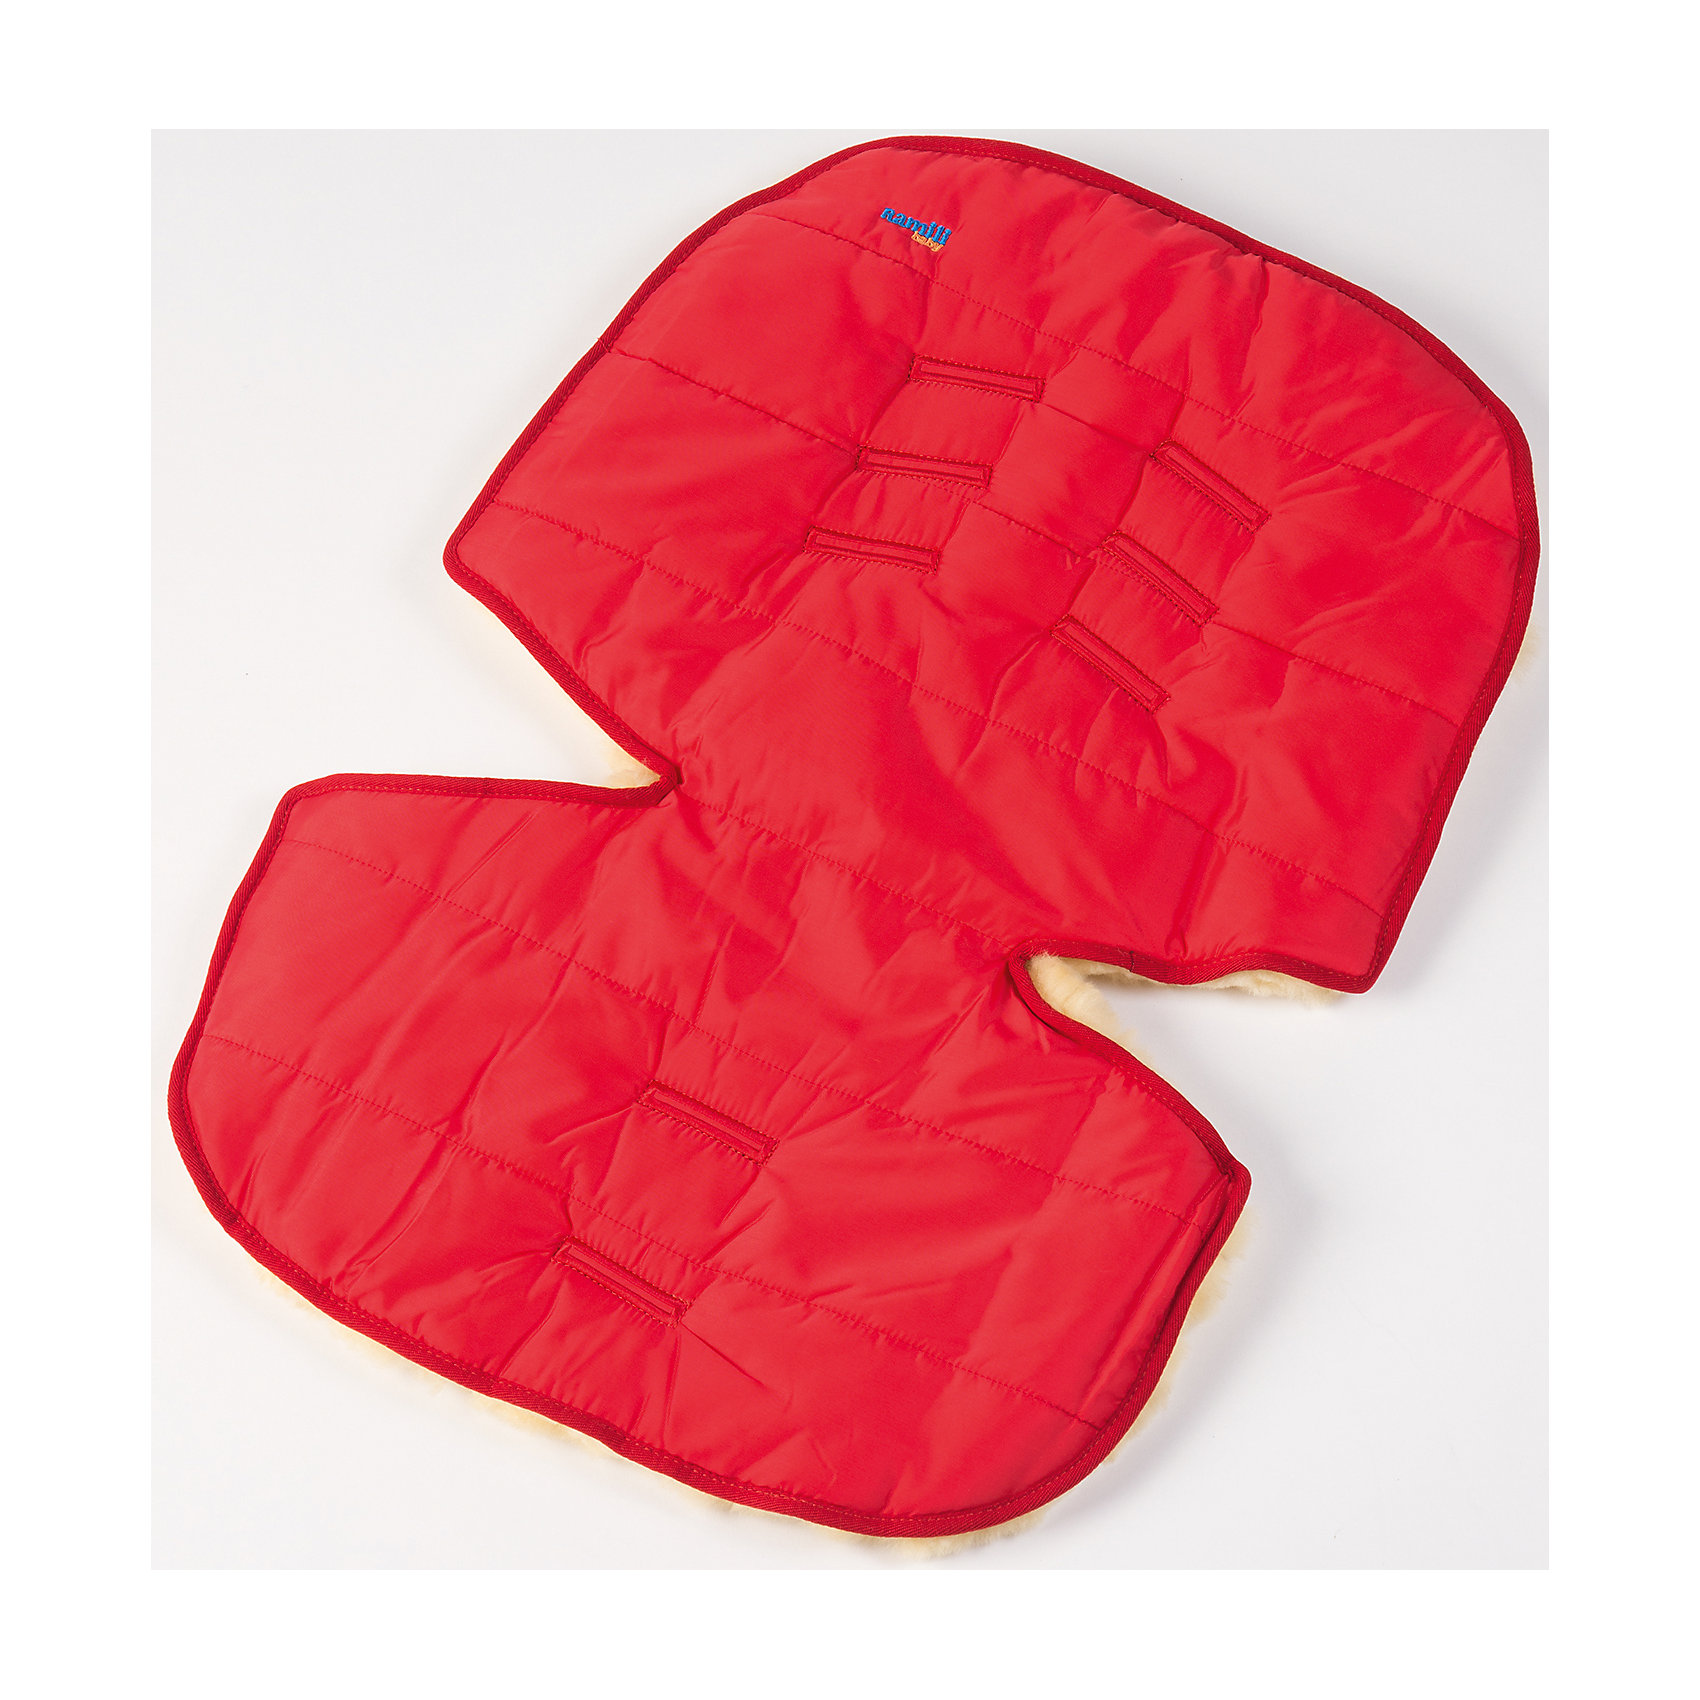 Меховой коврик для коляски и автокресла, , красный Ramili 4980607